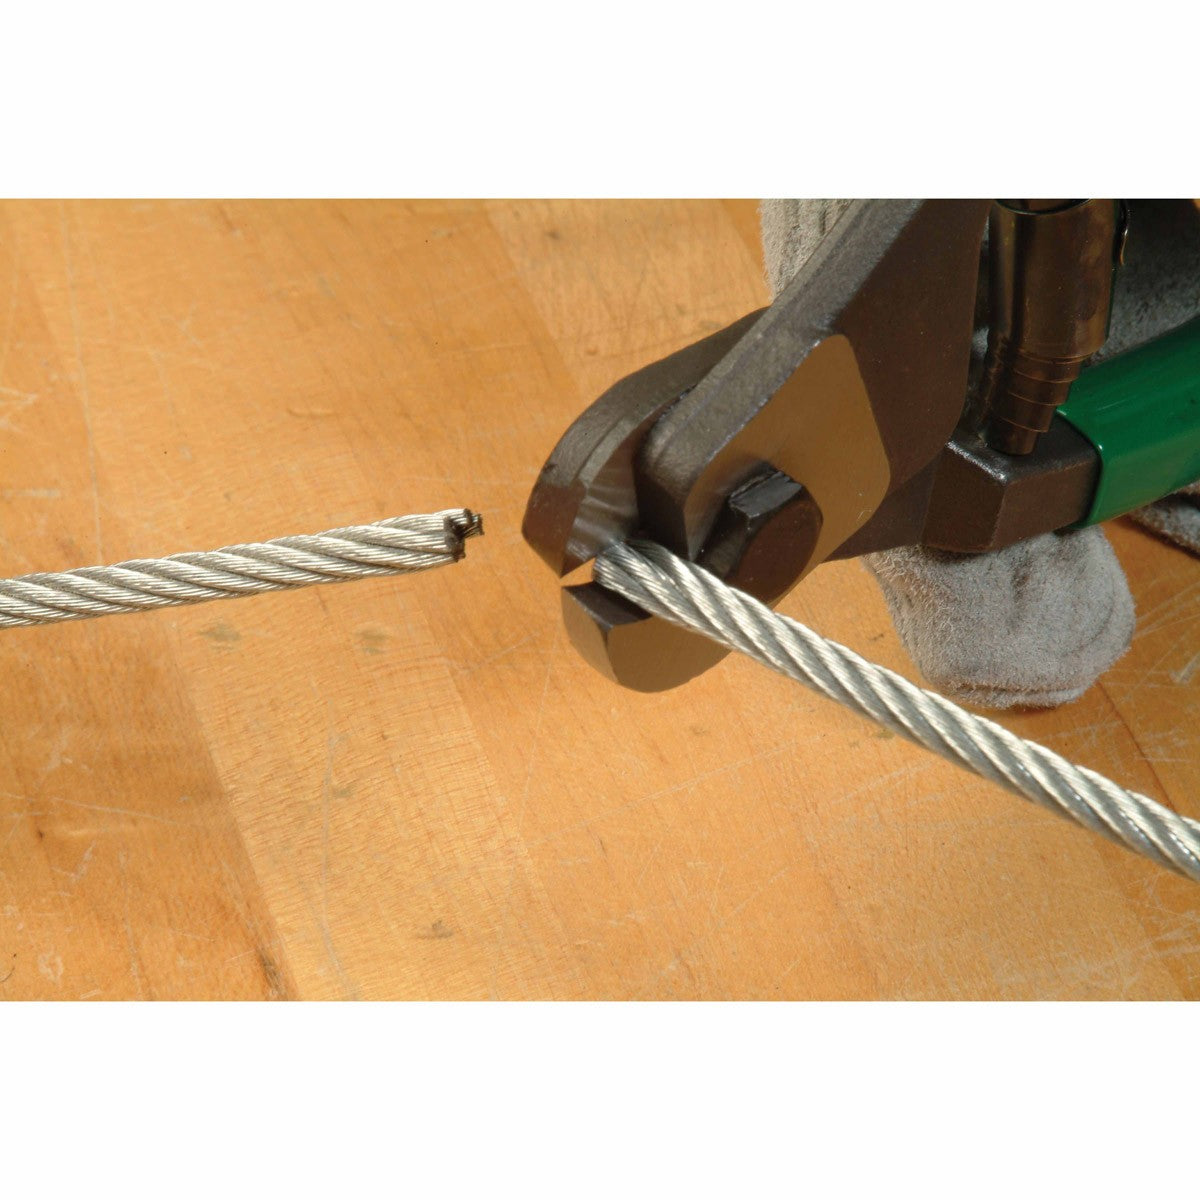 Greenlee 722 Wire Rope & Wire Cutter - 19990